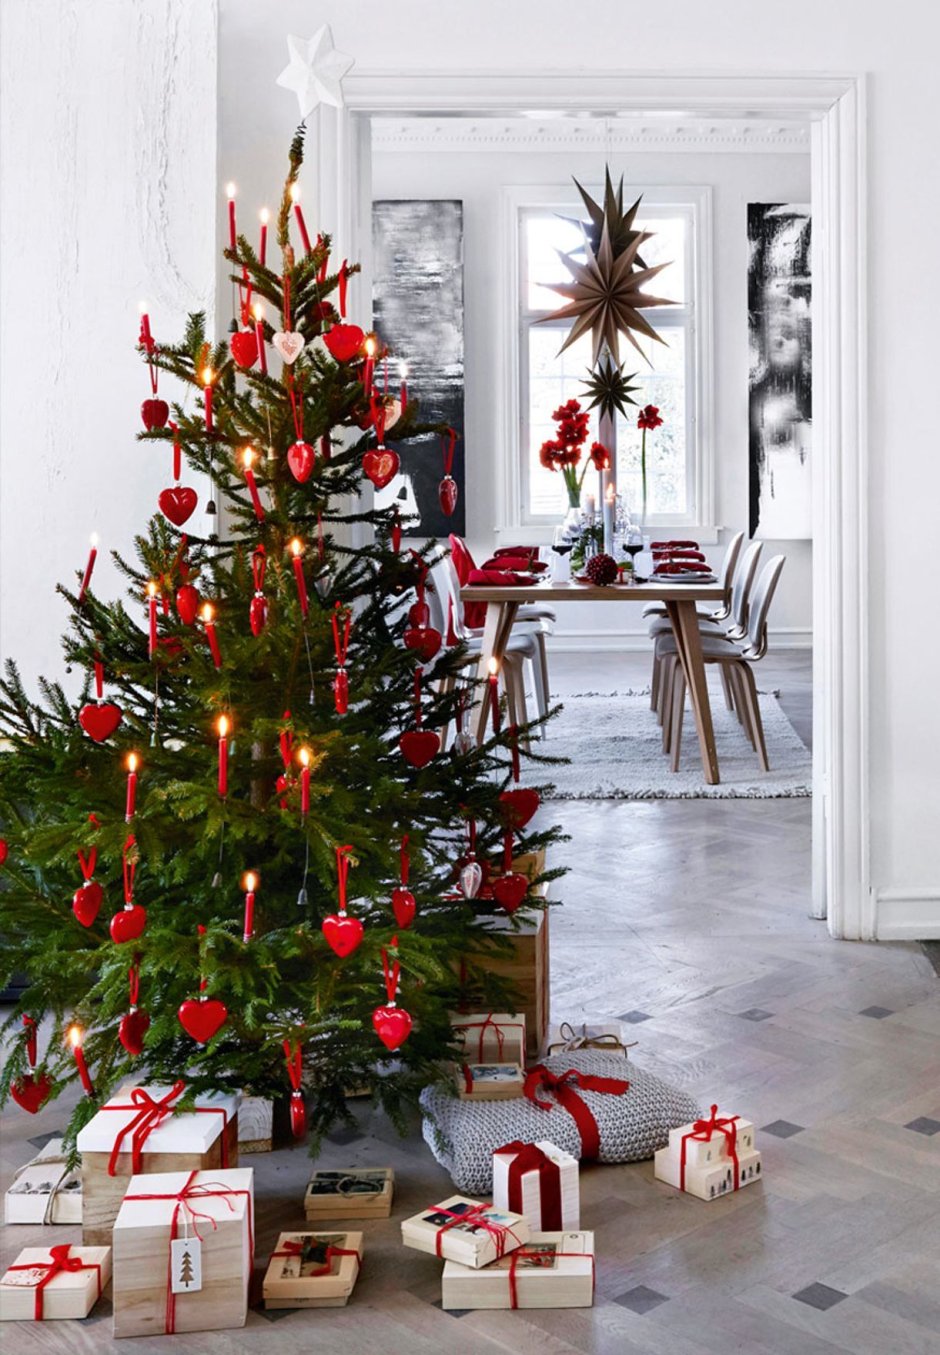 Новогодняя елка в скандинавском стиле